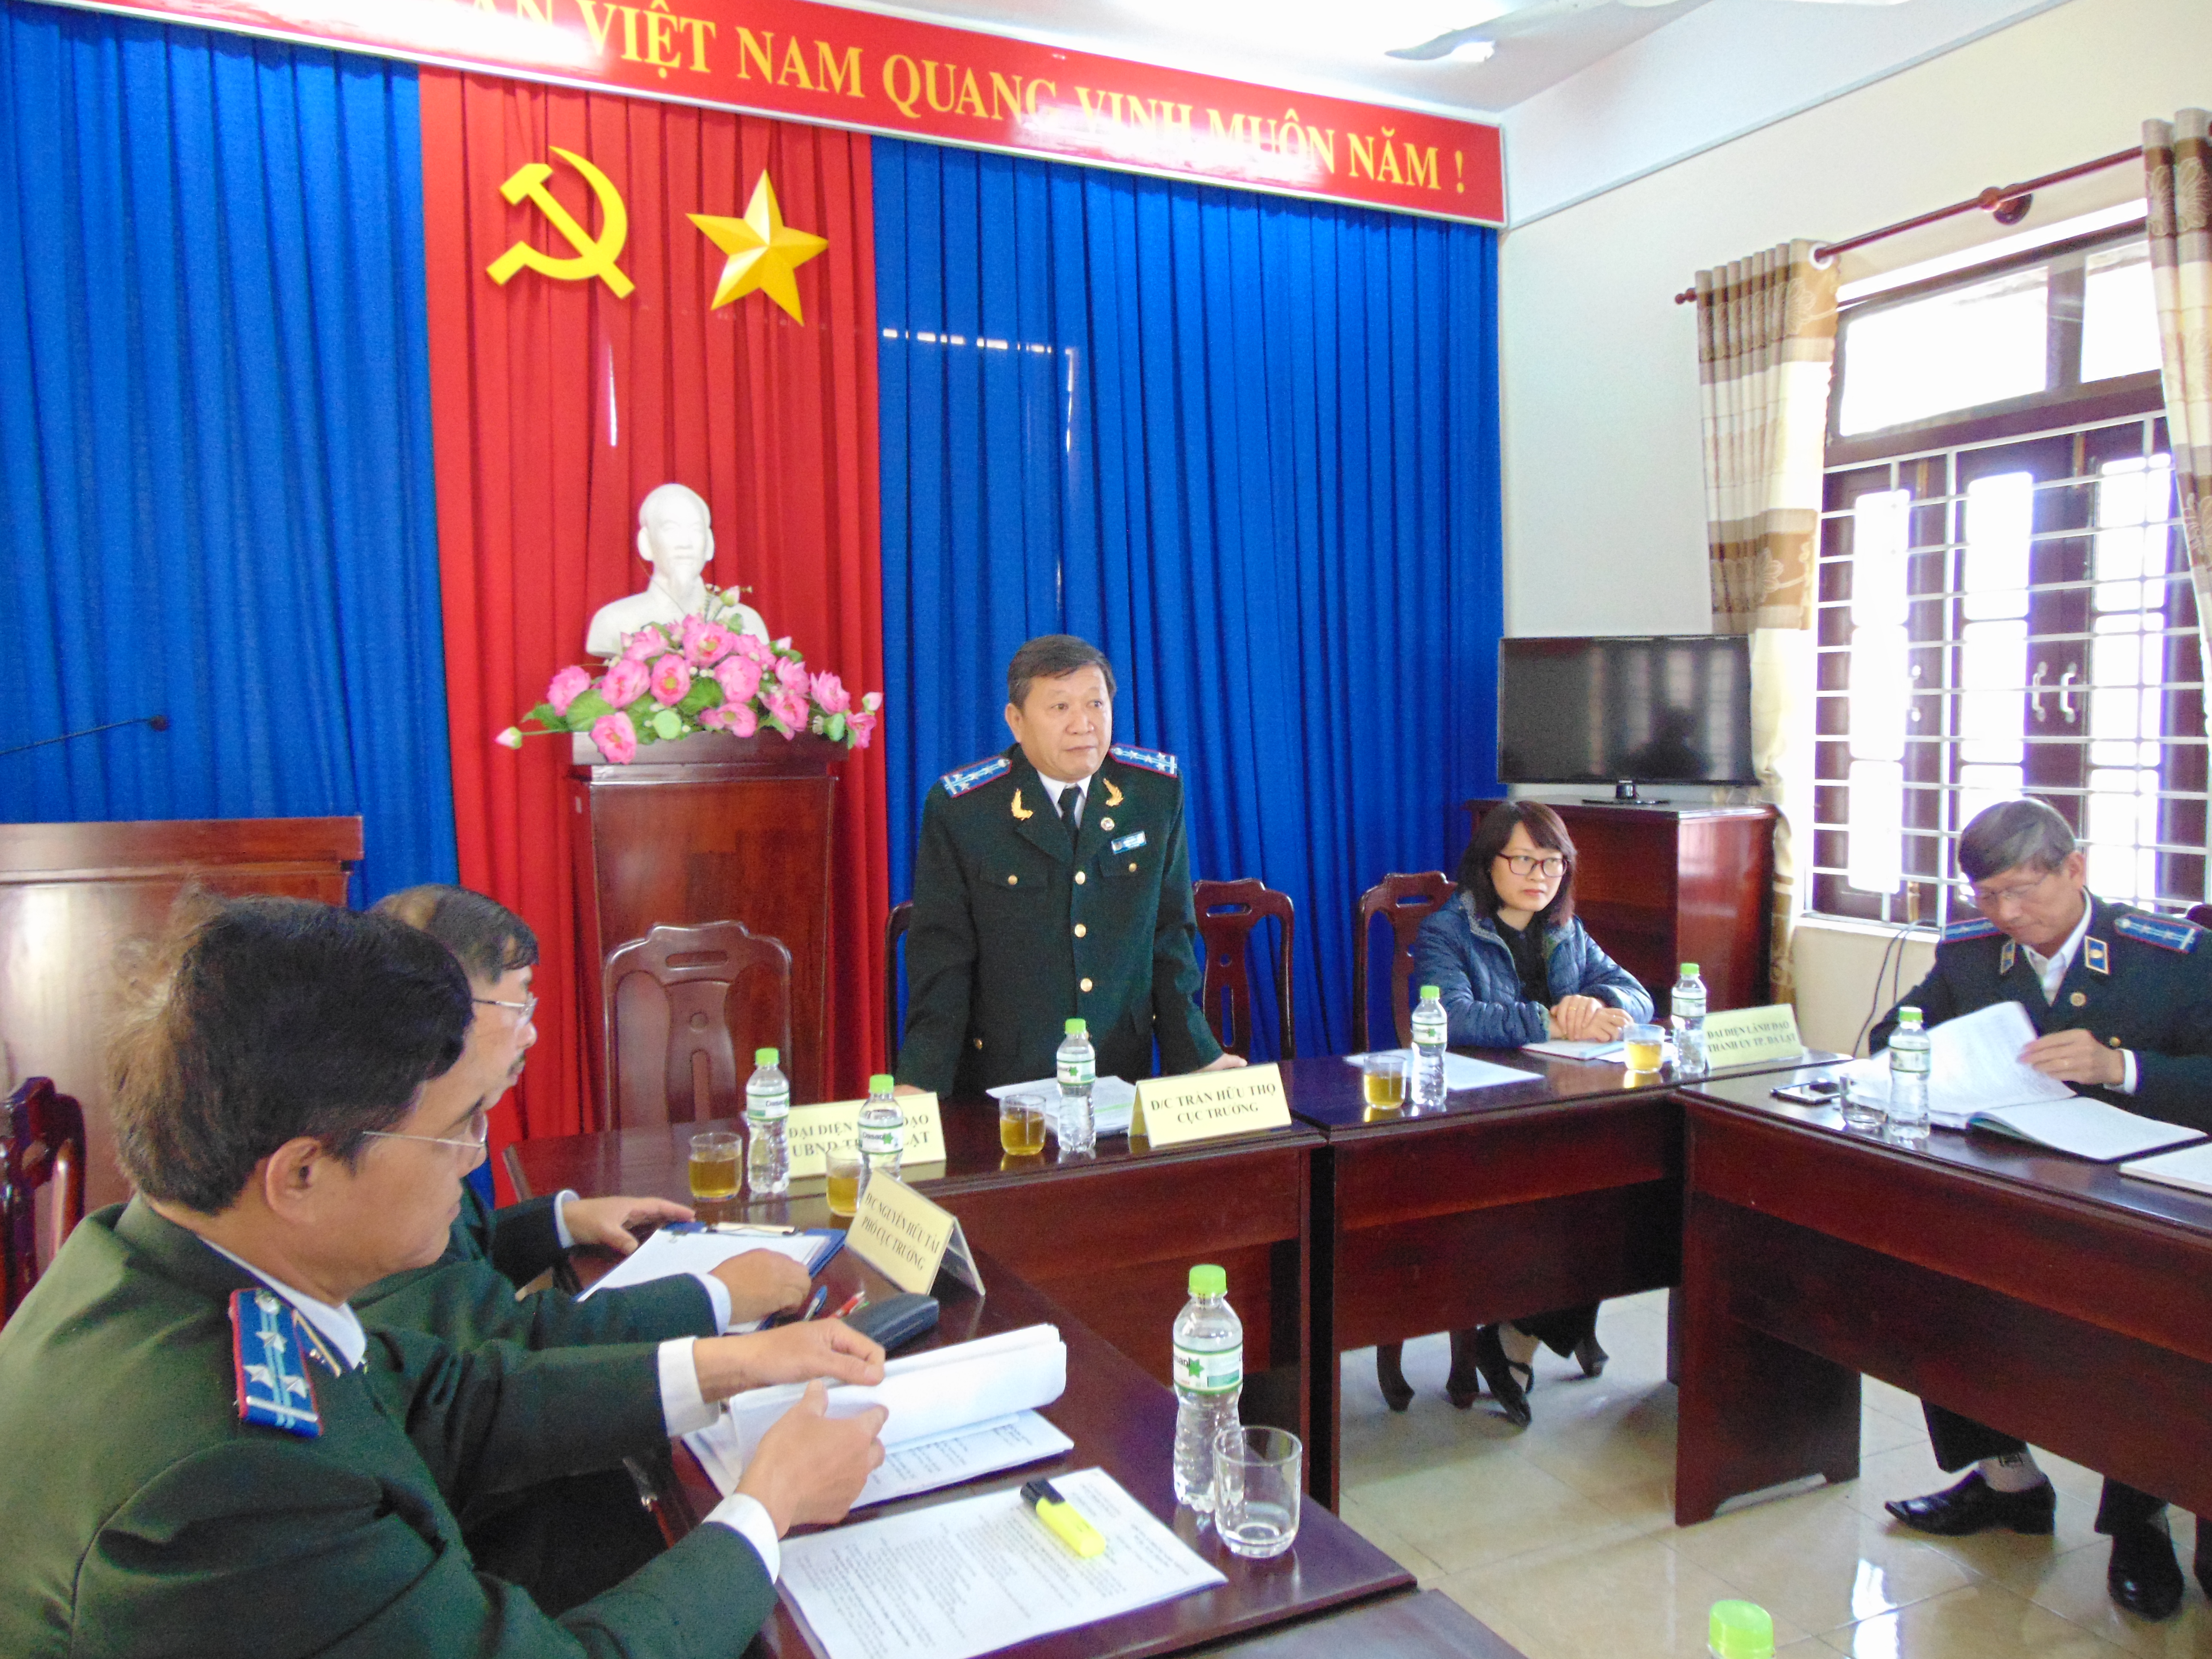 Cục trưởng Cục Thi hành án dân sự tỉnh làm việc với Chi cục Thi hành án dân sự thành phố Đà Lạt, để đánh giá kết quả thực hiện công tác thi hành án dân sự năm 2017 và  việc triển khai nhiệm vụ công tác năm 2018.